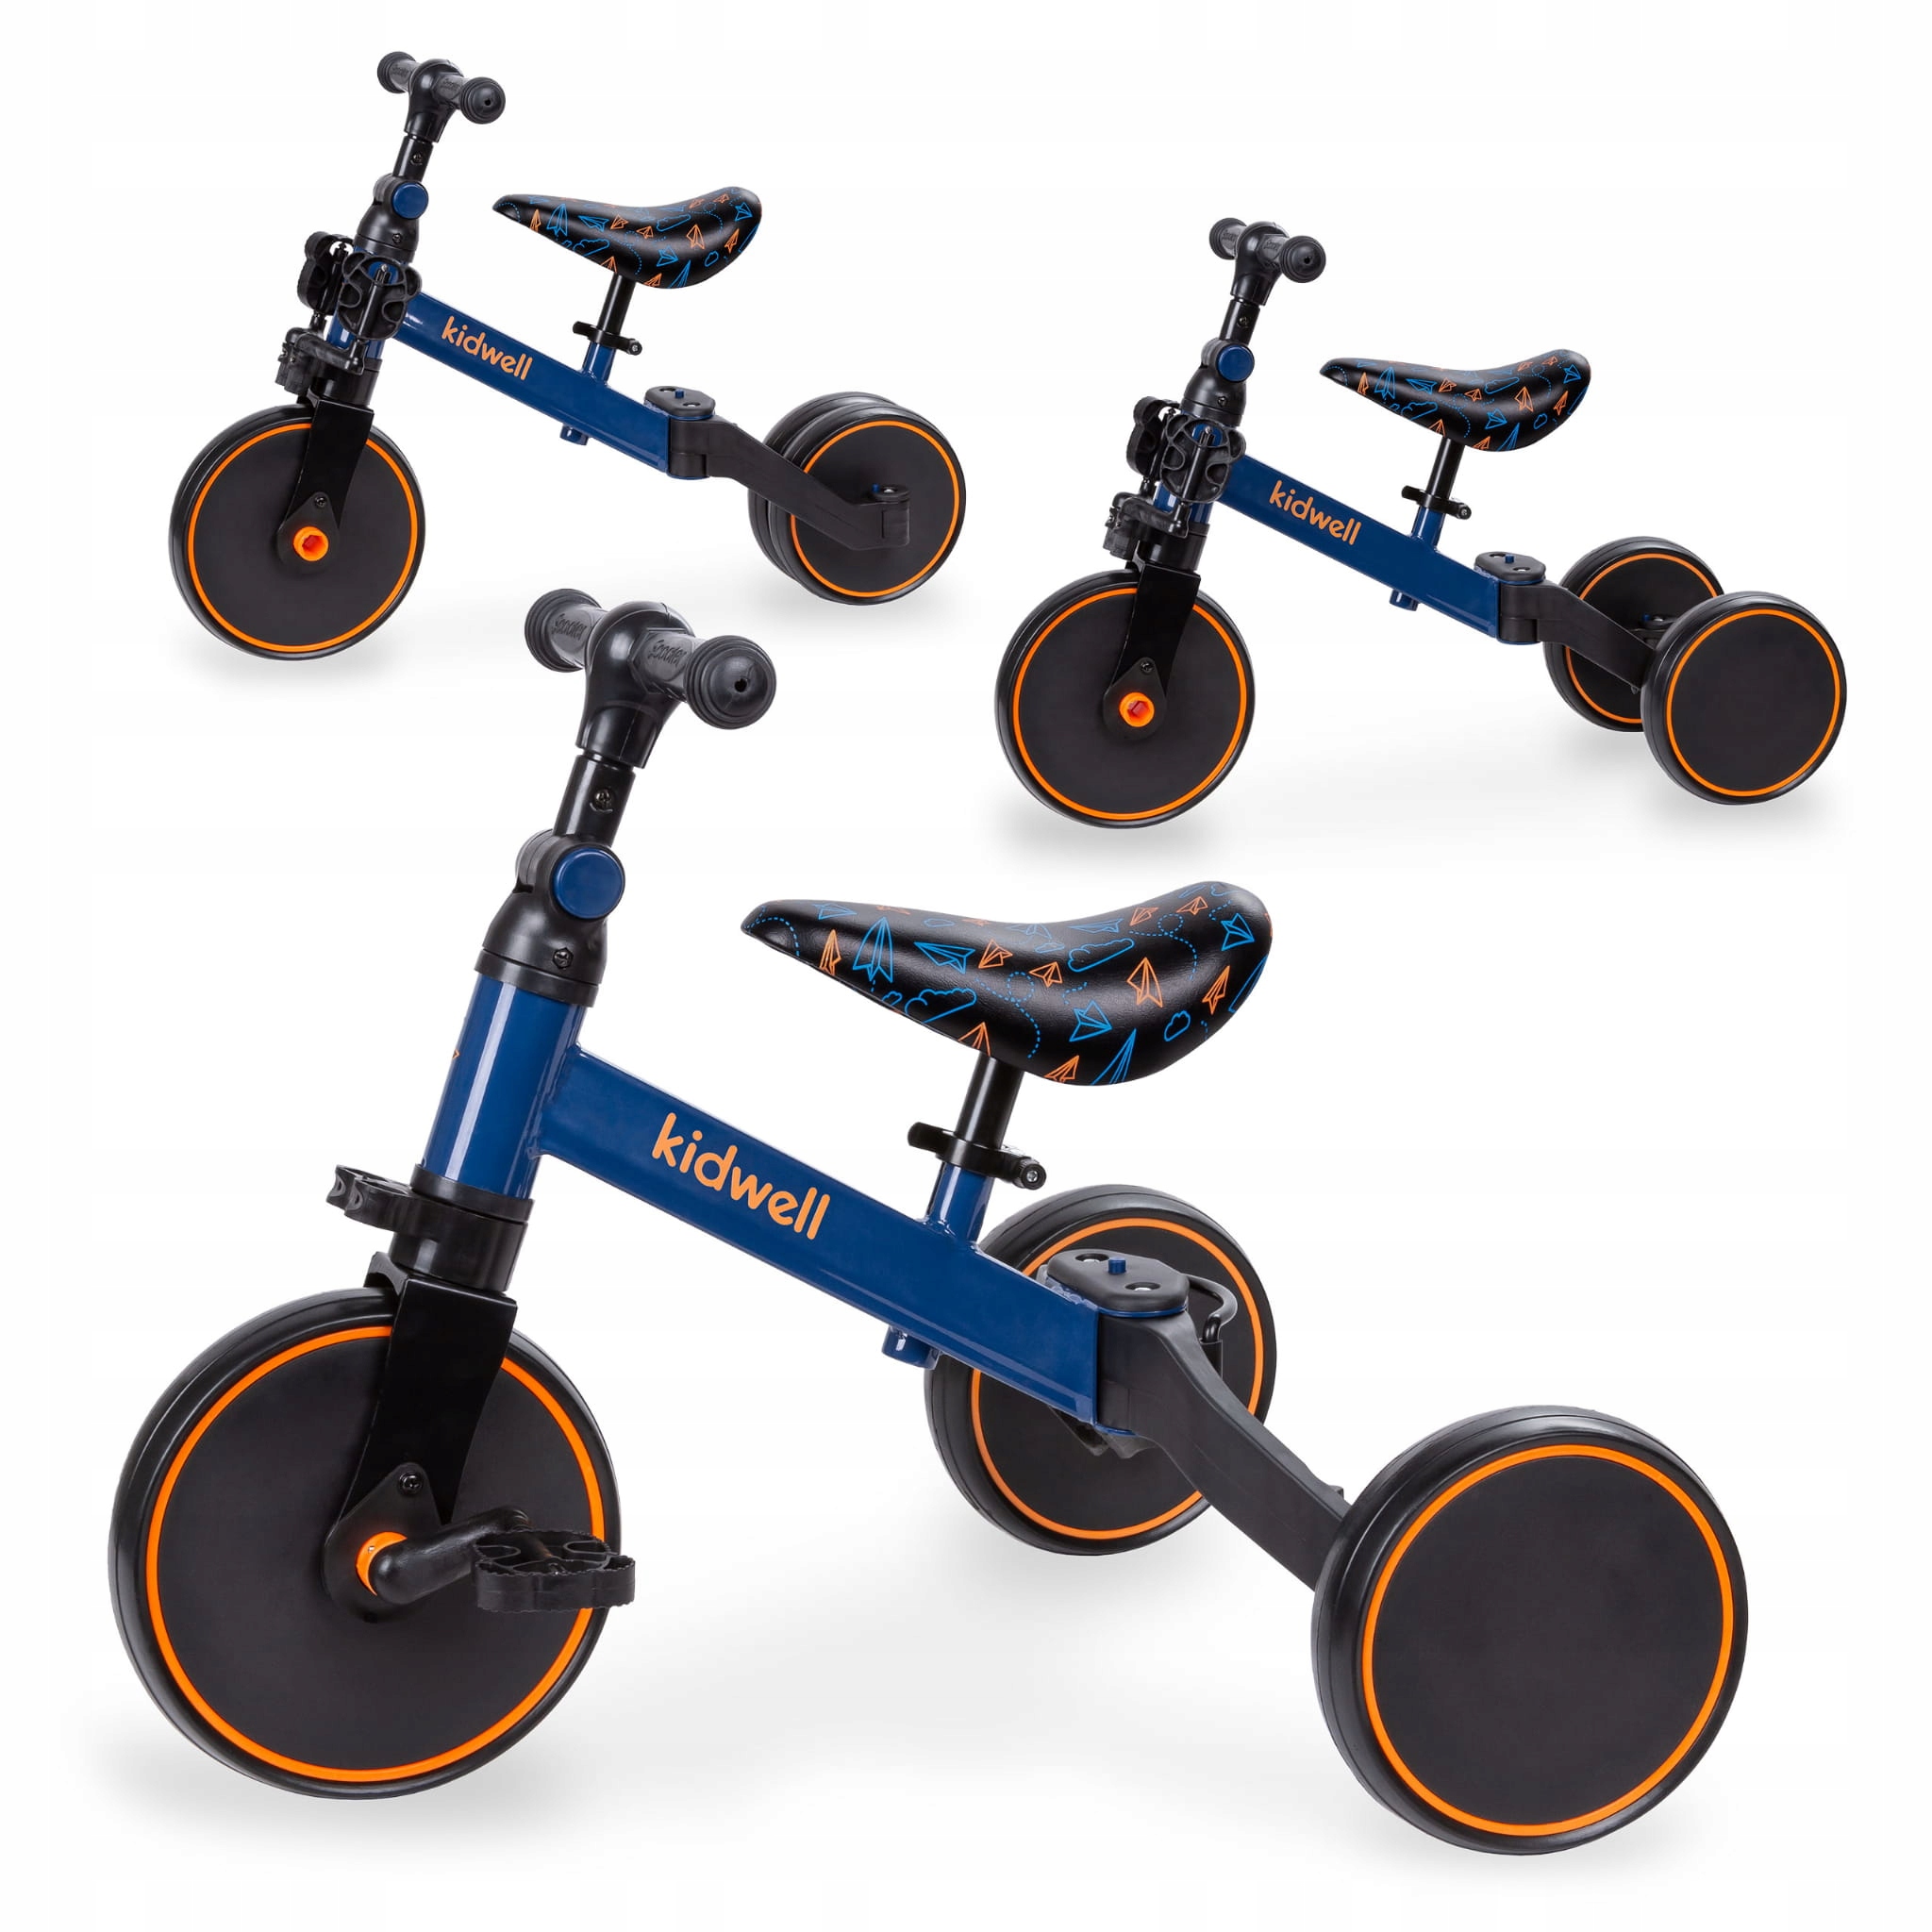 من الدراجات ثلاثية العجلات إلى دراجات التوازن: التحول في آلات ركوب الأطفال